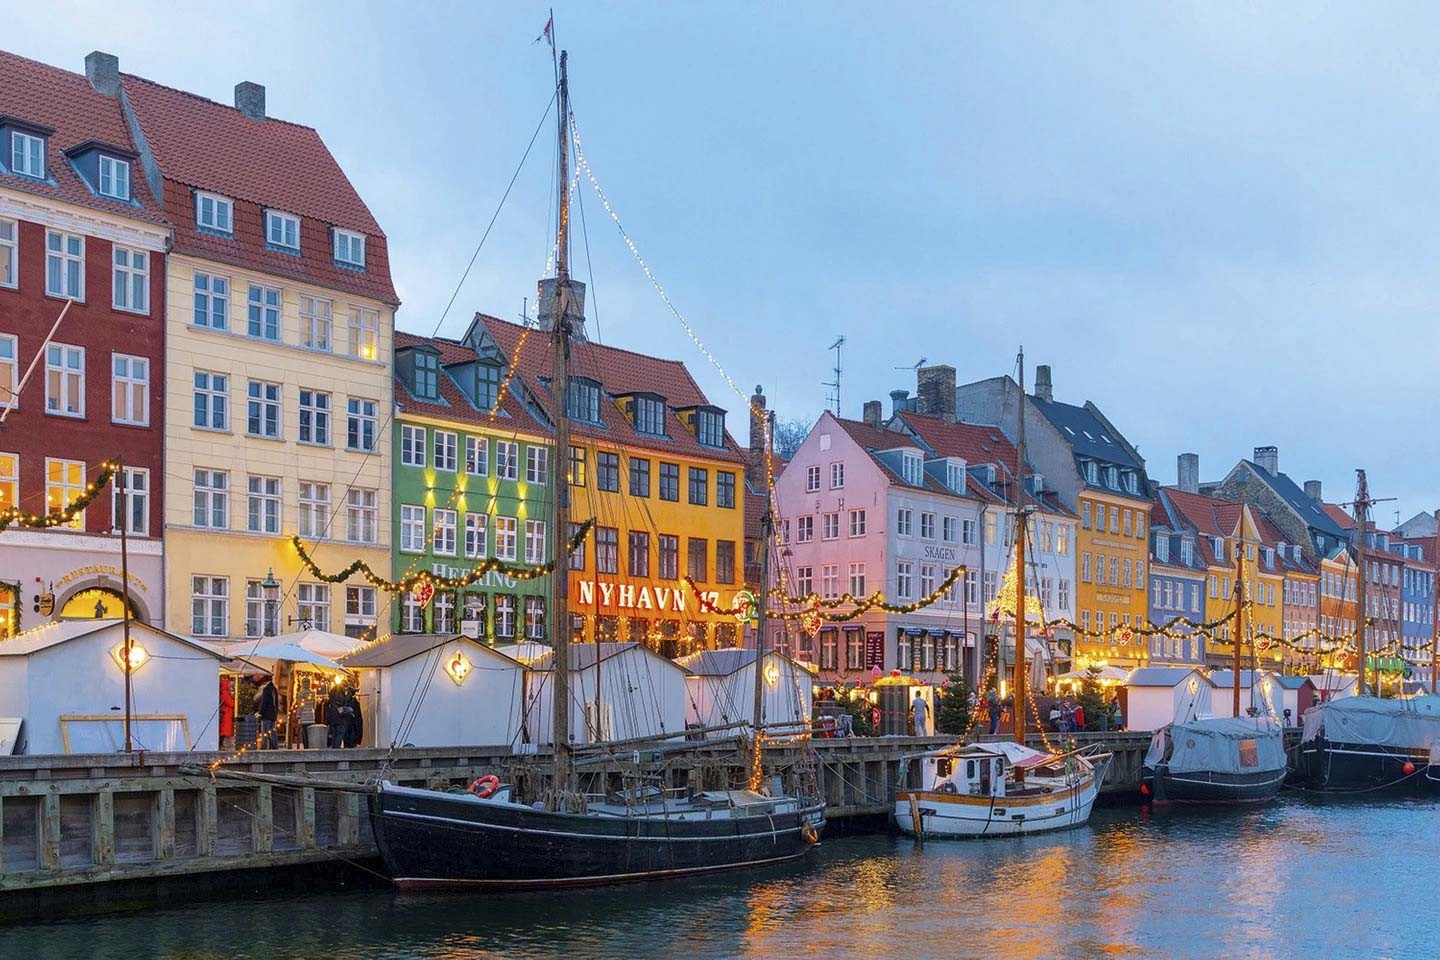 Copenhagen, Đan Mạch: Mùa đông đến, công viên giải trí lịch sử của Copenhagen, Tivoli Gardens, lấp lánh trong hàng triệu ánh đèn lễ hội. Các quầy hàng tràn ngập đồ chơi bằng gỗ, đồ trang trí bằng gốm truyền thống, rượu ngâm và Dansk aebleskiver (bánh rán 